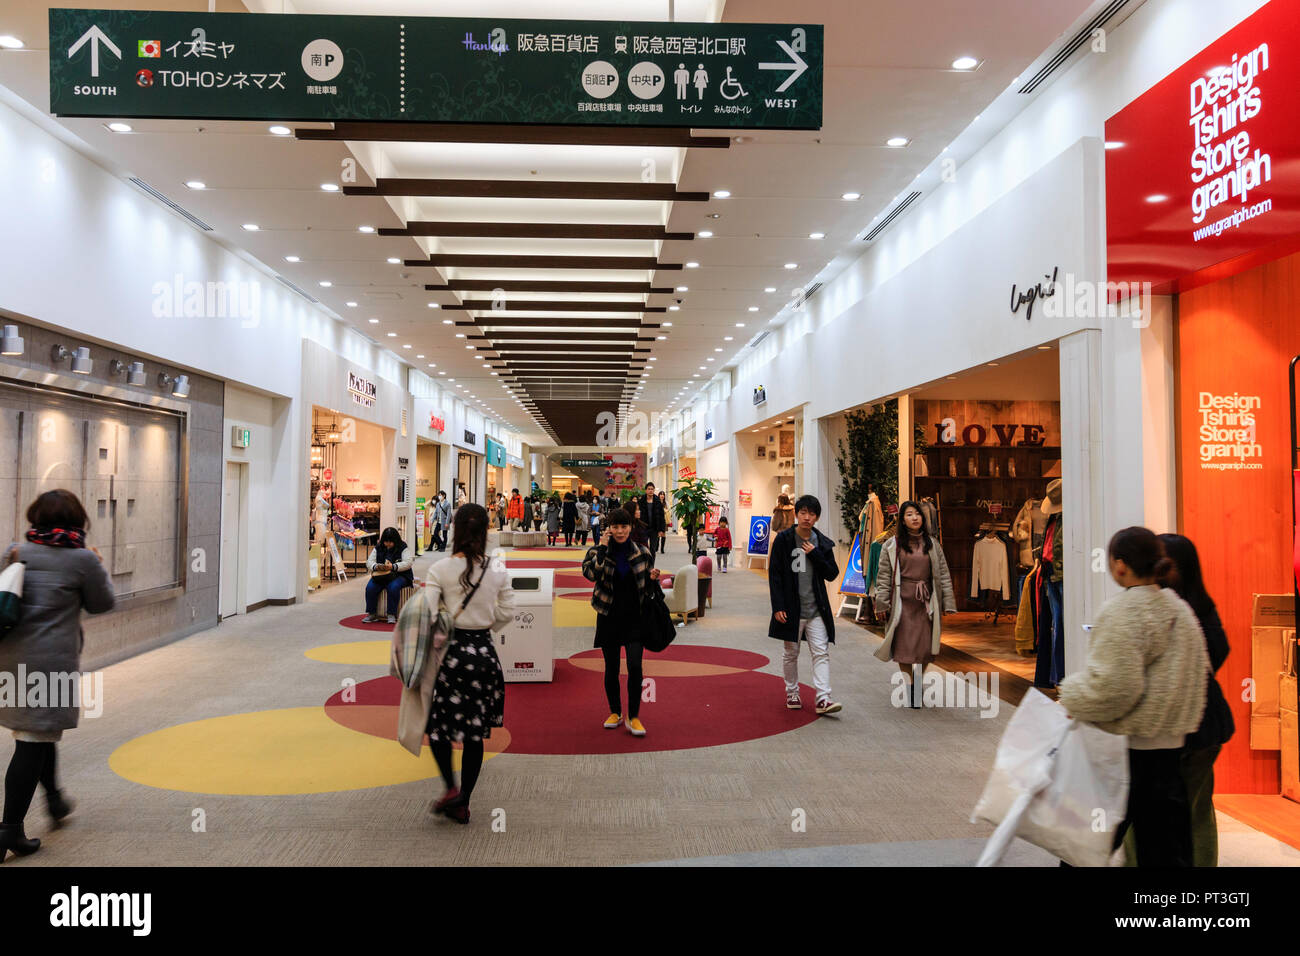 Innenraum der Nishinomiya Gärten Shopping Center, Japan. Käufer entlang Teppichboden shopping Gang mit Geschäften auf beiden Seiten. Stockfoto